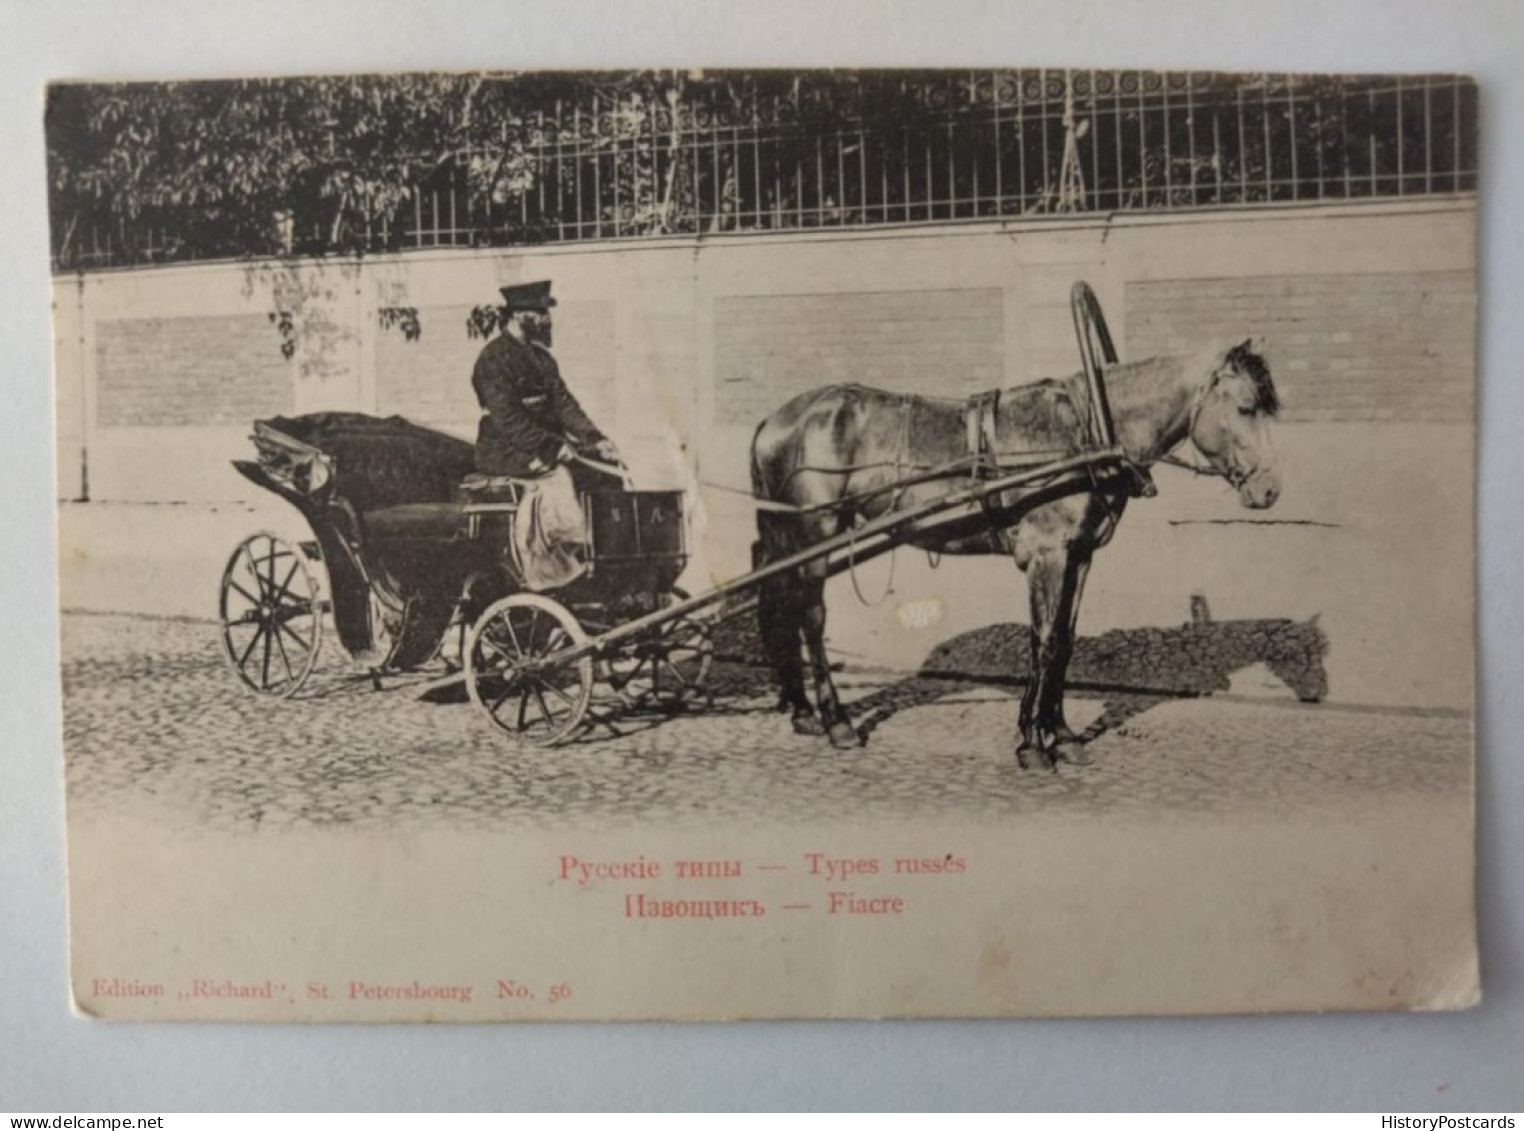 Kutsche, Fiaker, Pferd, Kutscher, Russland, Russia, St. Petersburg, 1905 - Rusland